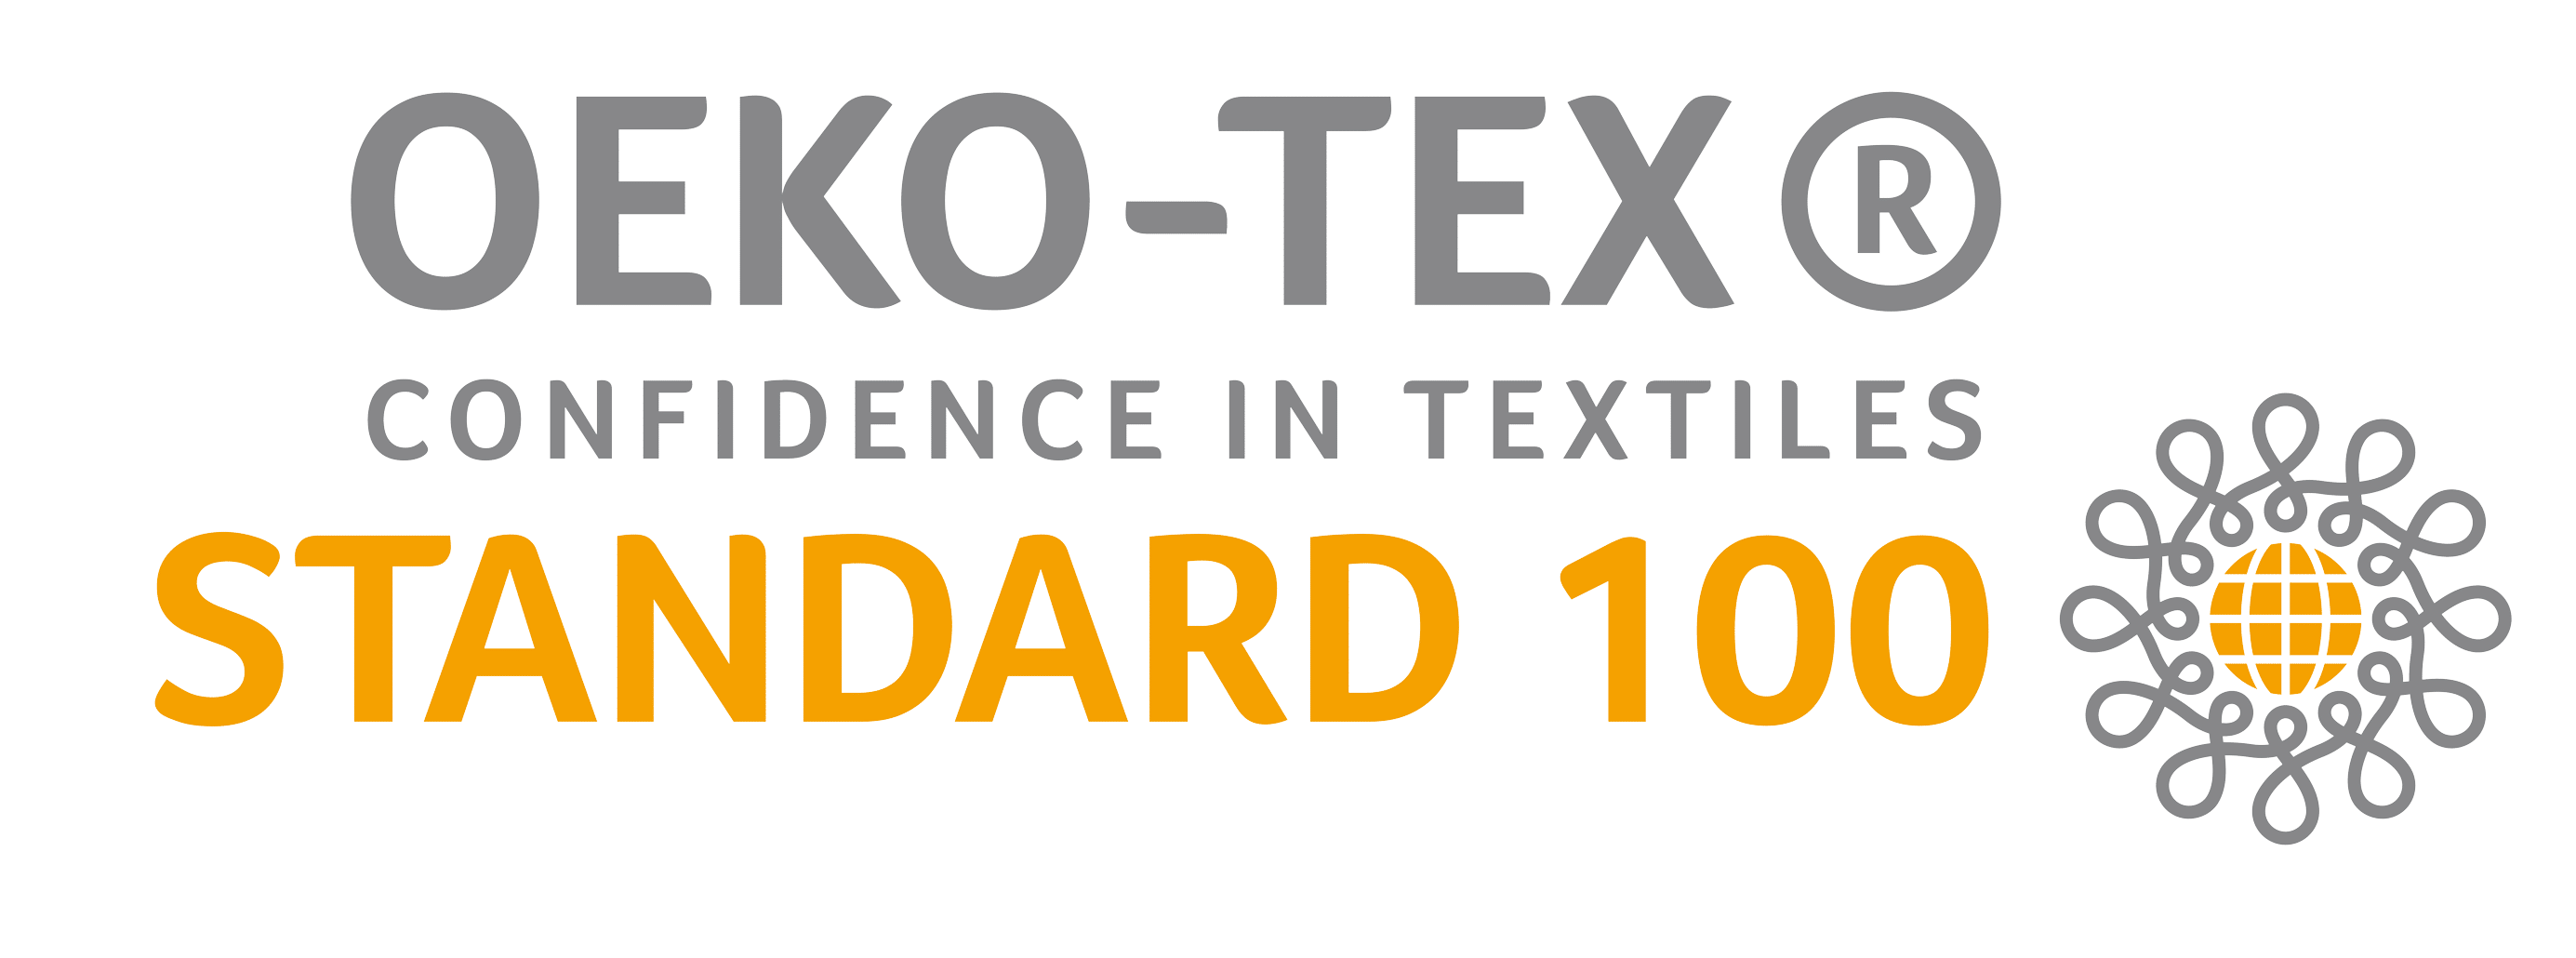 oeko tex standard 100 crib mattress